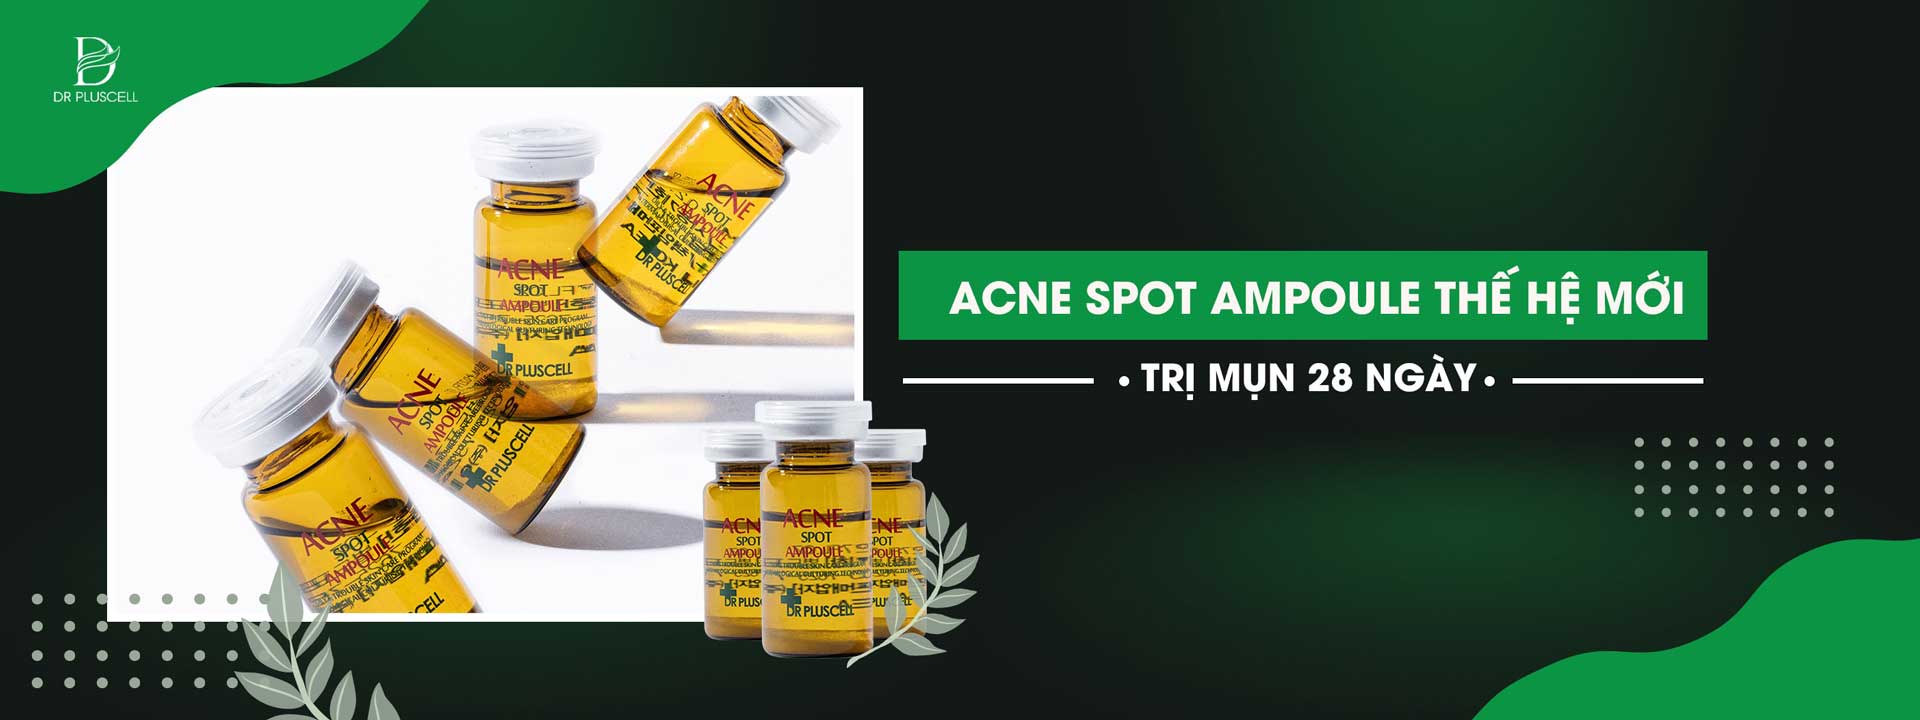 acne-spot-ampoule-the-he-moi